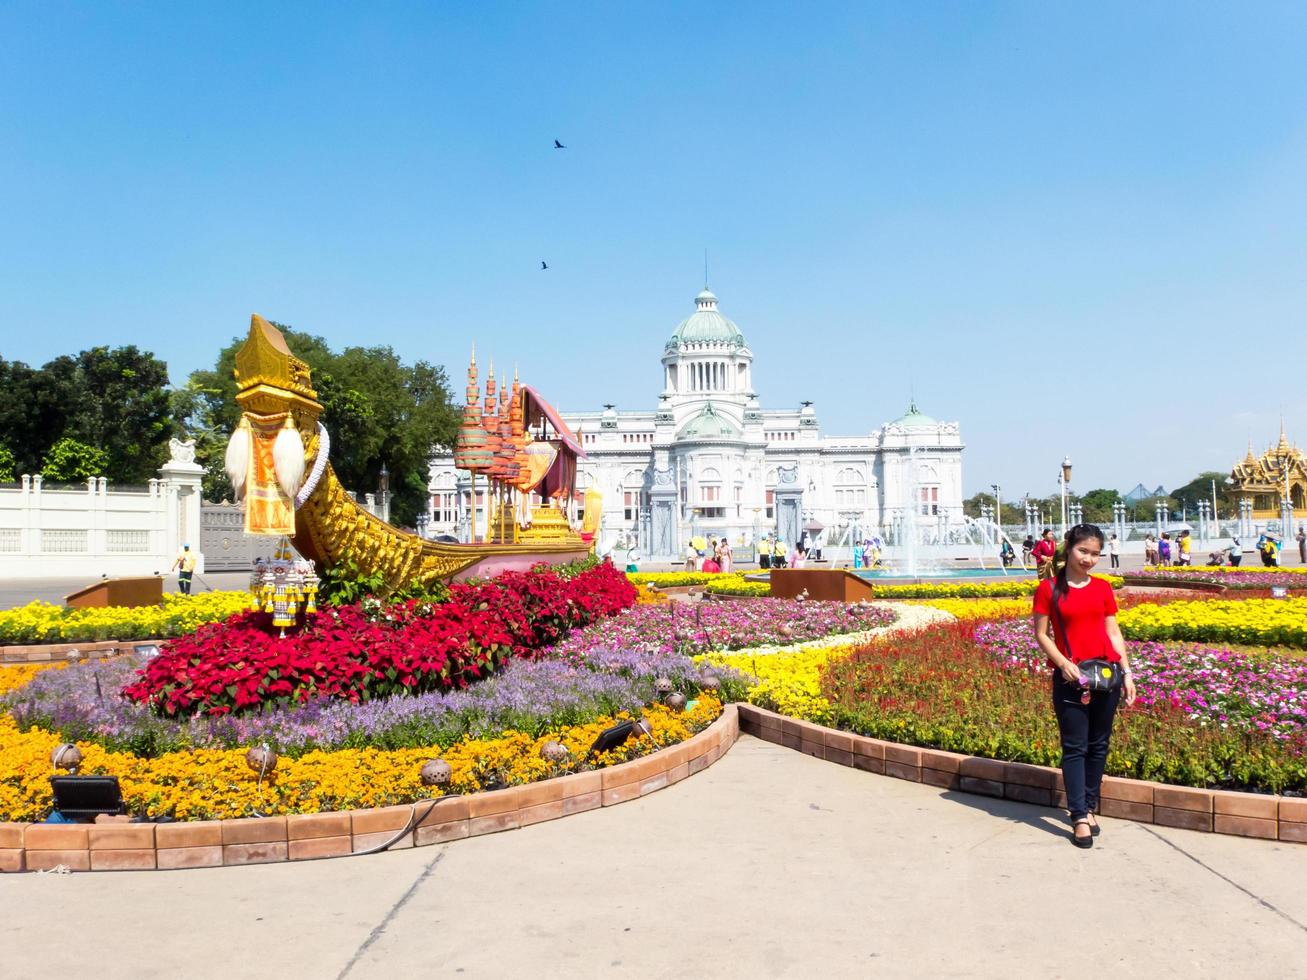 os jardins do dusit palace bangkok thailand31 de dezembro de 2018love and warm in winters end festival no ground of dusit palace. 0n bangkok tailândia31 de dezembro de 2018. foto